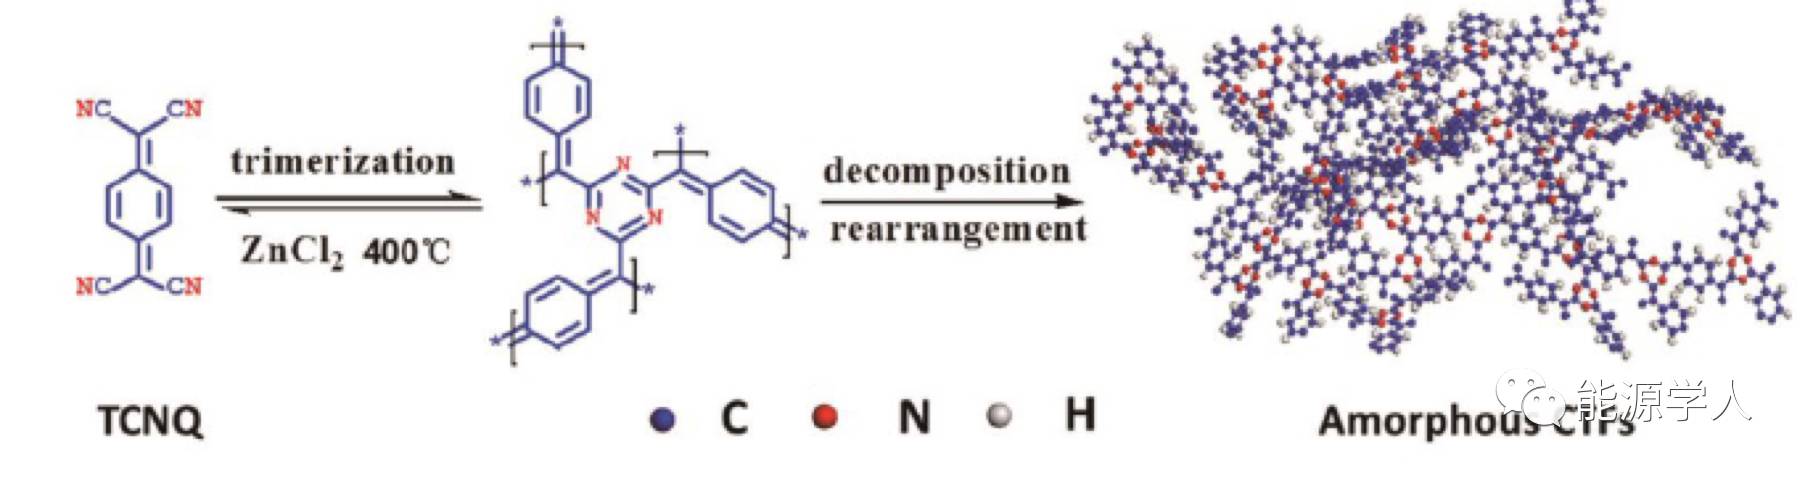 导电微孔共价三嗪基框架用于高性能电化学电容储能